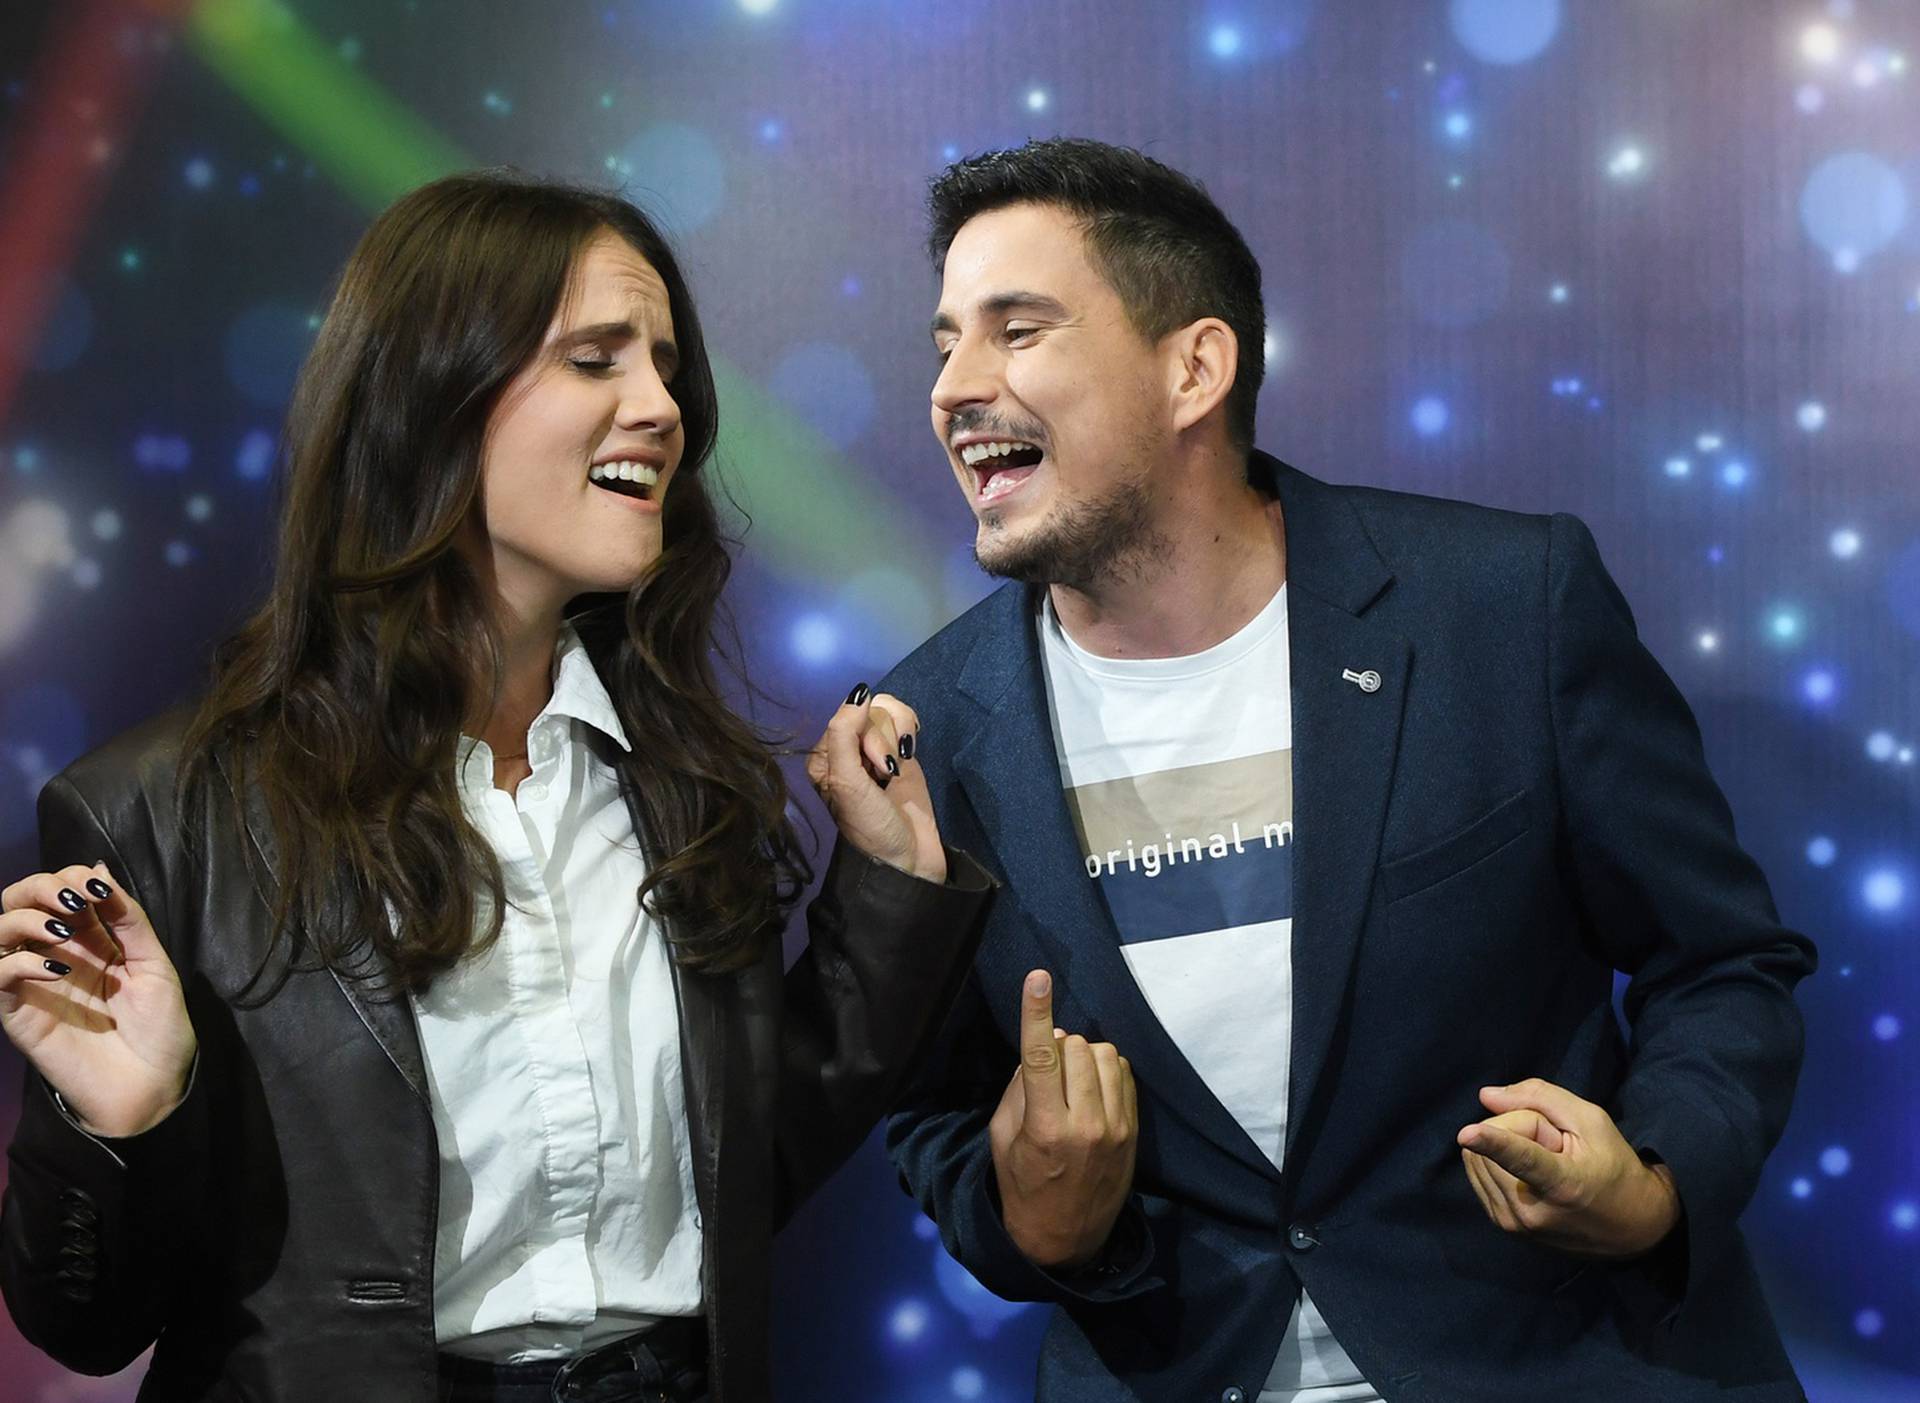 ANKETA Uskoro kreće show 'Zvijezde pjevaju'. Sviđaju li vam se parovi u novoj sezoni?